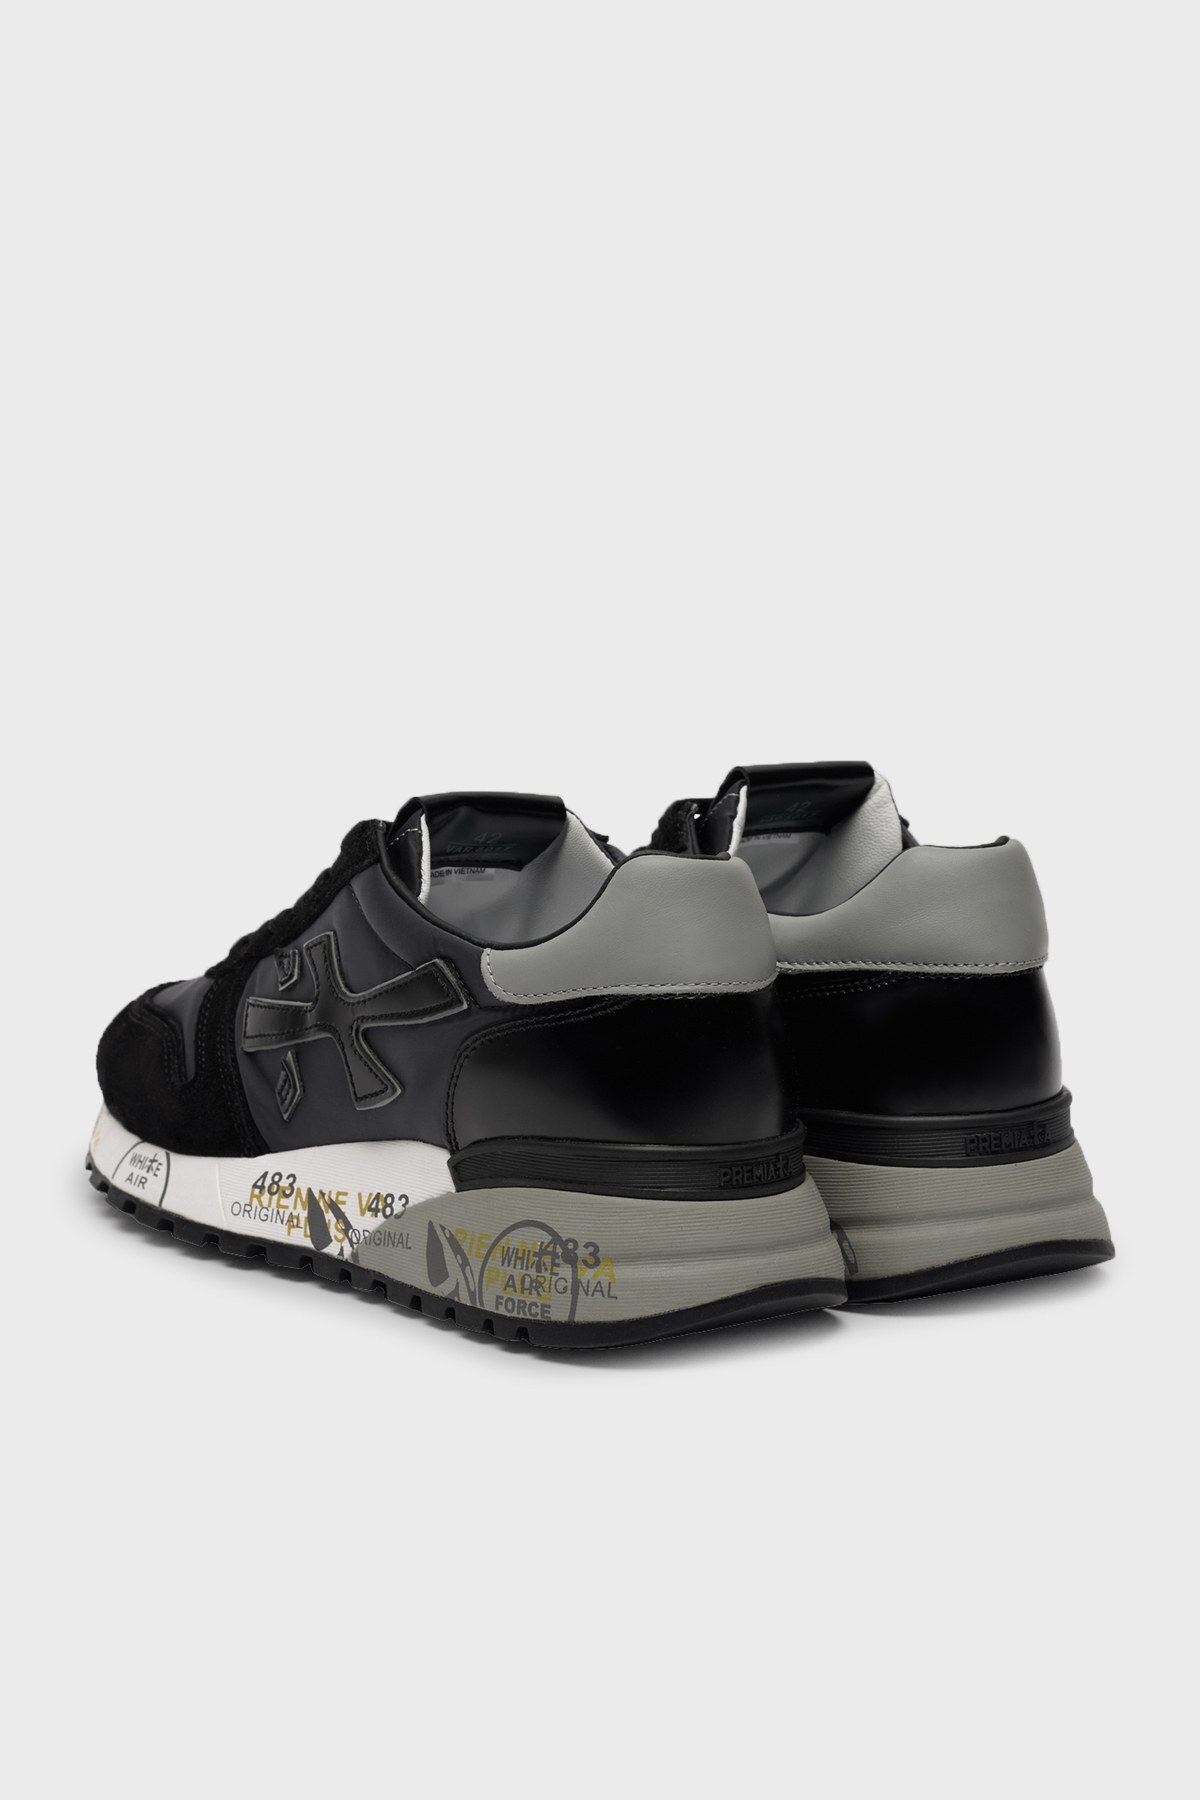 Premiata Baskılı Sneaker Erkek Ayakkabı MICK 5017 SİYAH